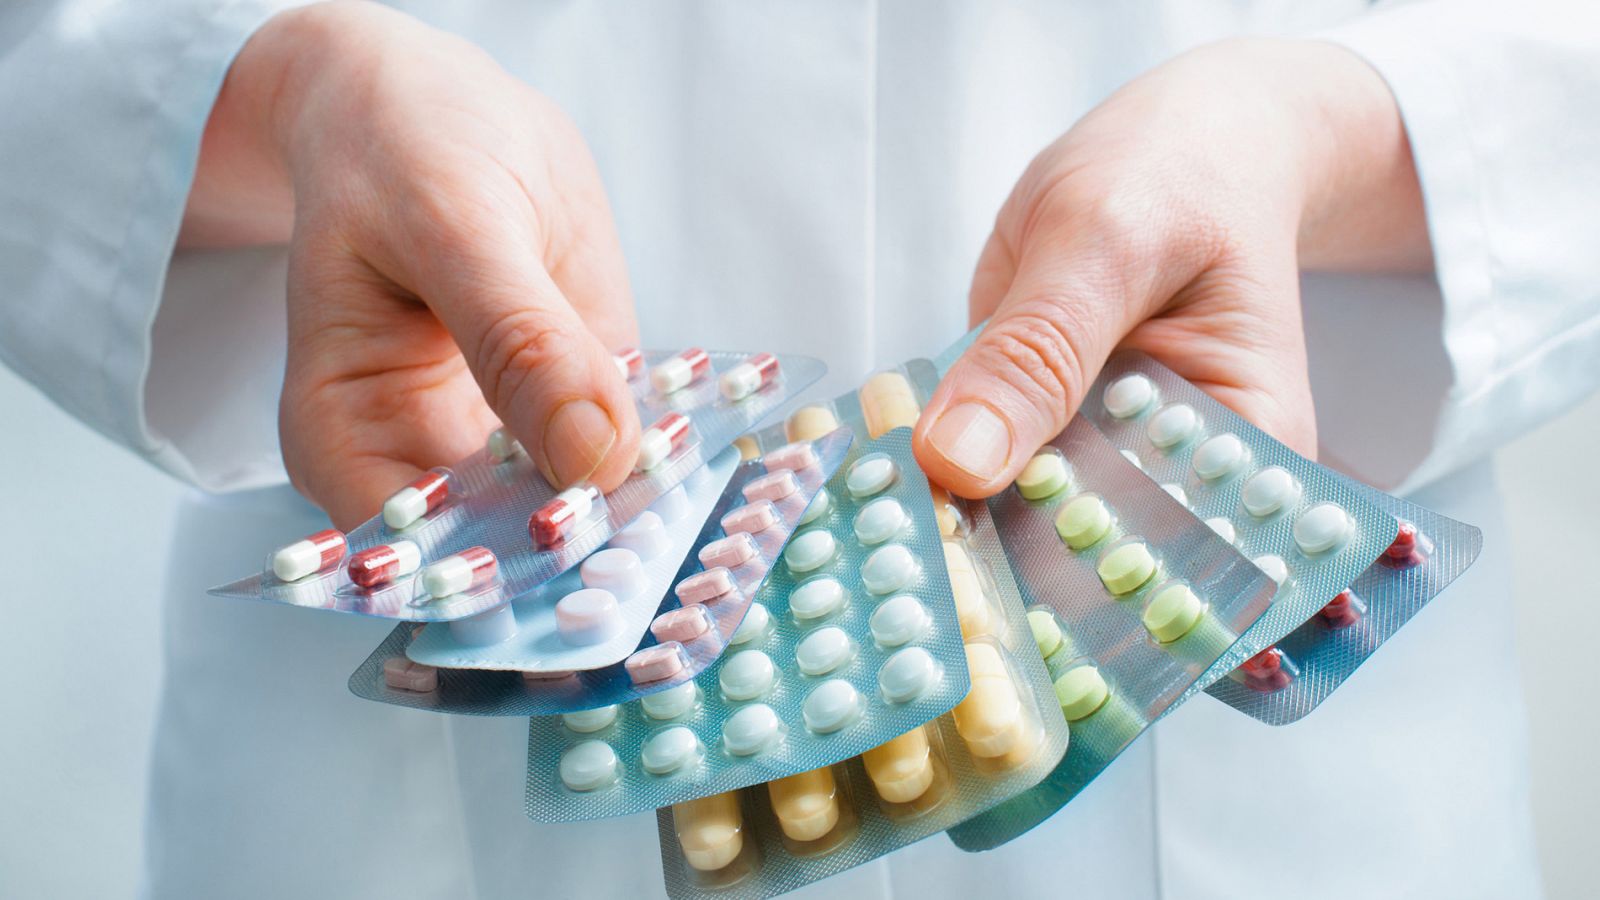 Sanidad: Los medicamentos tendrán nuevos envases en cumplimiento de la normativa europea de verificación - RTVE.es